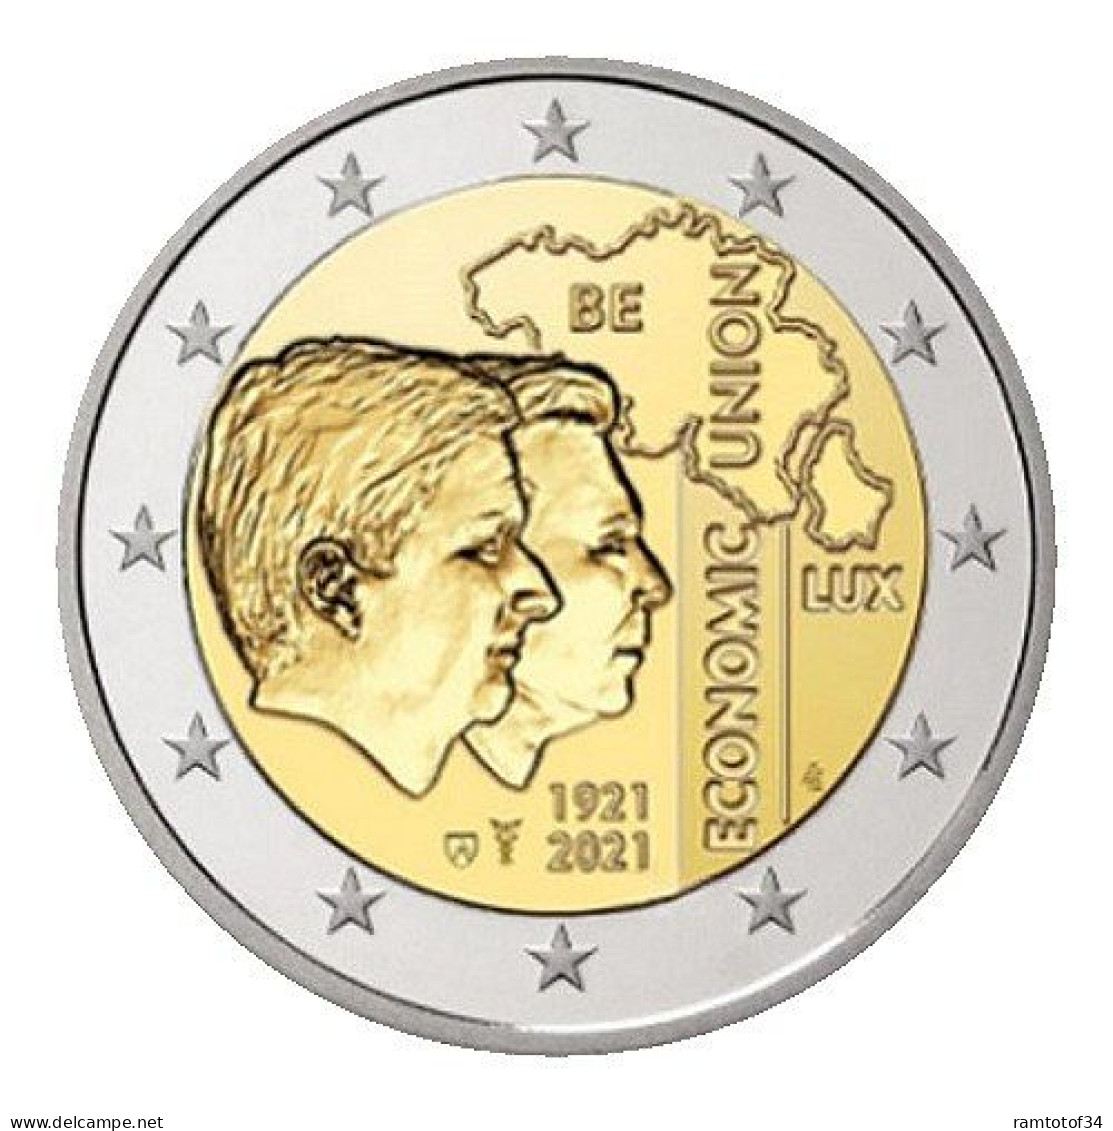 2021 BELGIQUE - 2 Euros Commémorative (coincard) BU - Union économique Avec Le Luxembourg - Version Flamande - Belgio